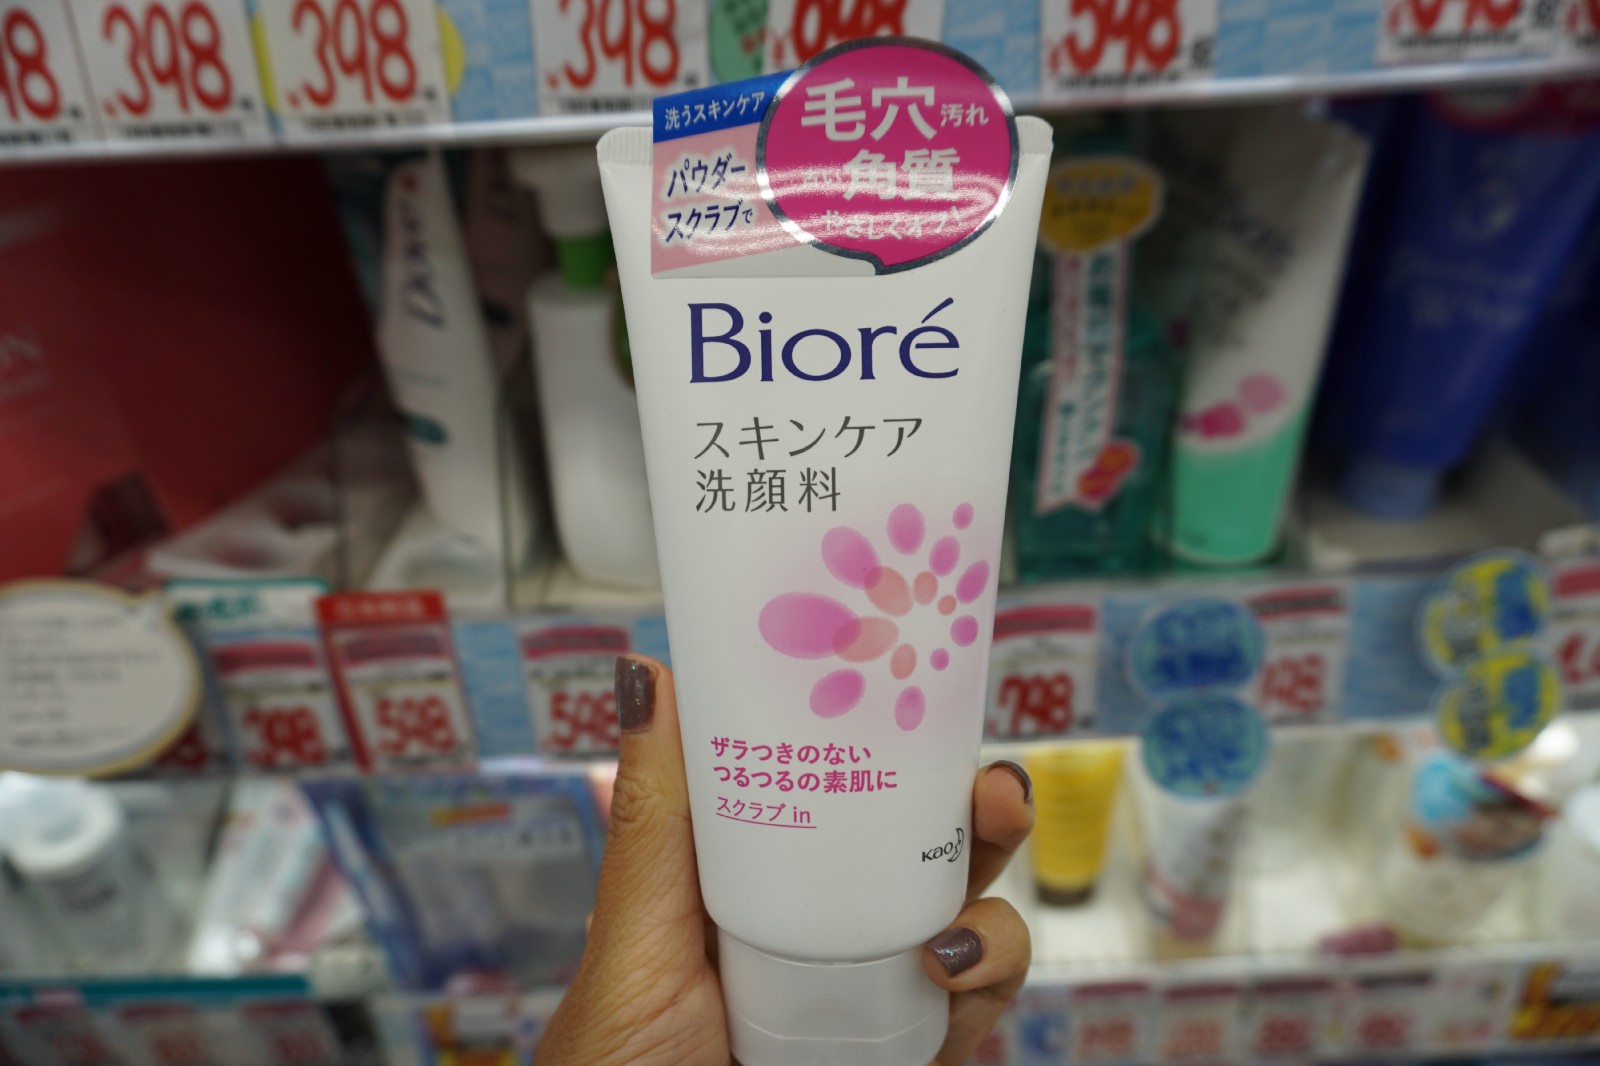 Biore Skincare Facial Foam Scrub in